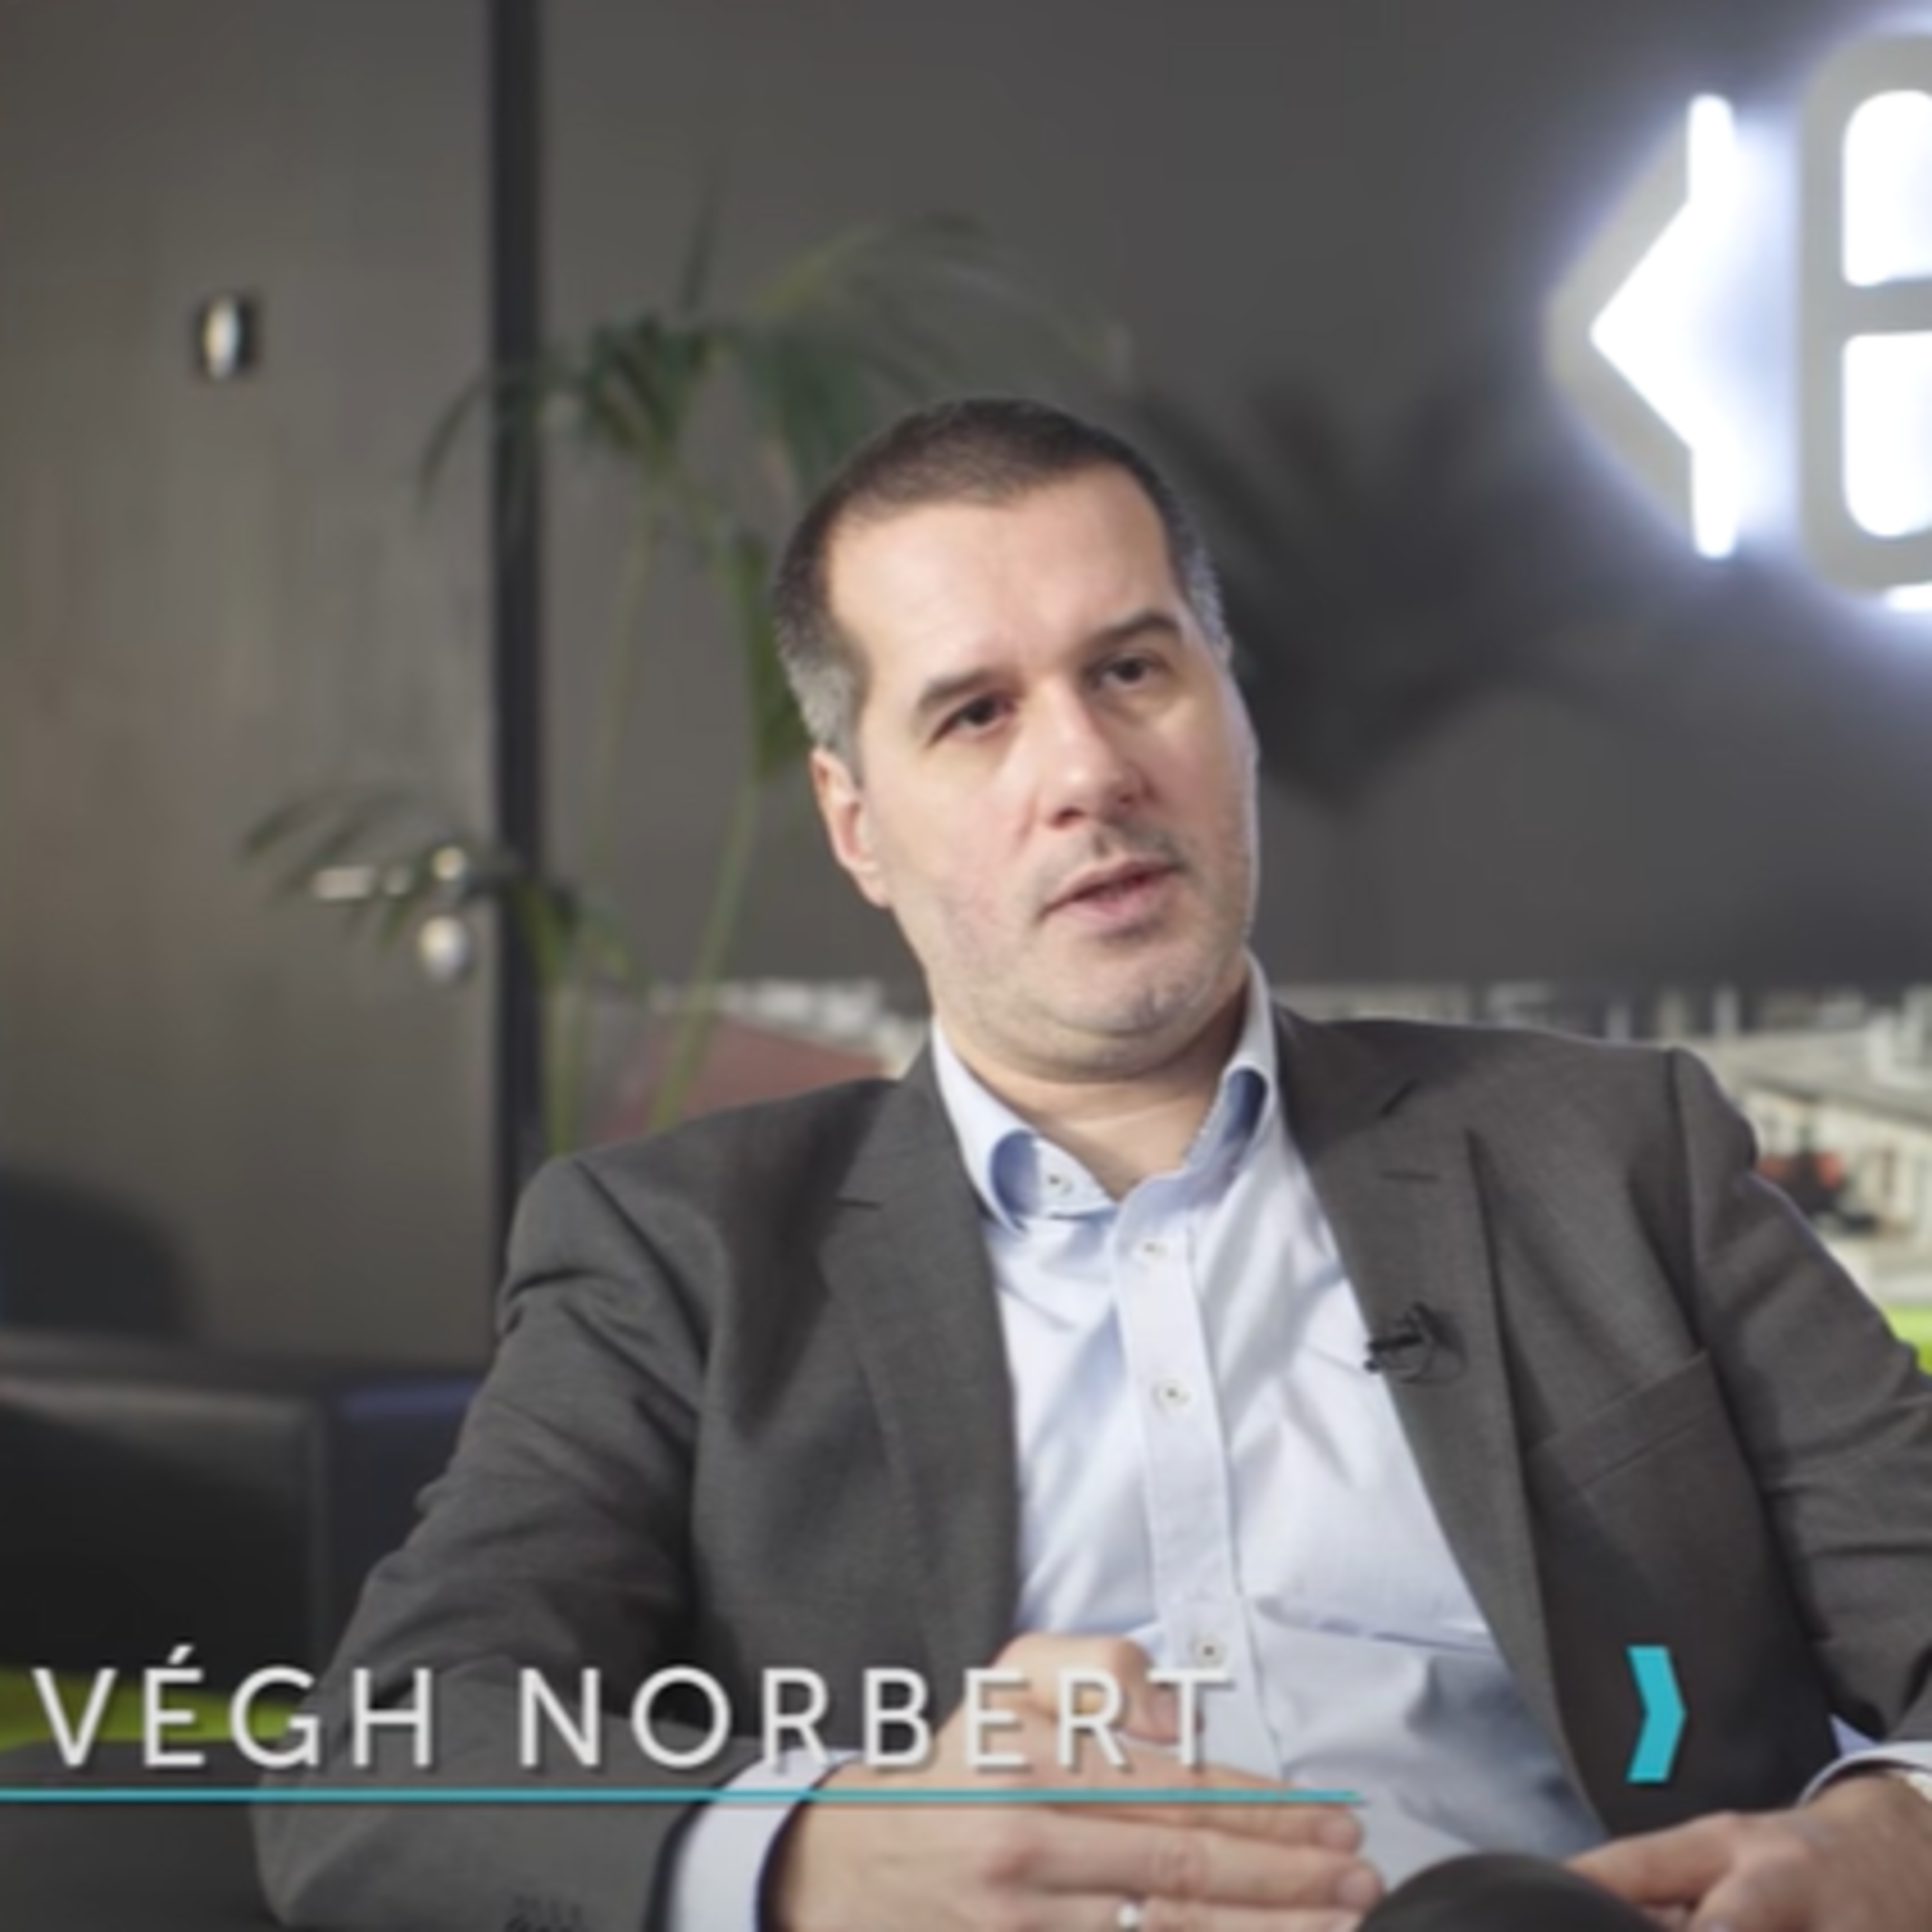 "Azt gondolom, hogy egy világ már mögöttünk van és egy újféle világ kezdeténél tartunk" - Végh Norberttel az EPAM magyarországi vezetőjével beszélgettünk az elmúlt fél évről